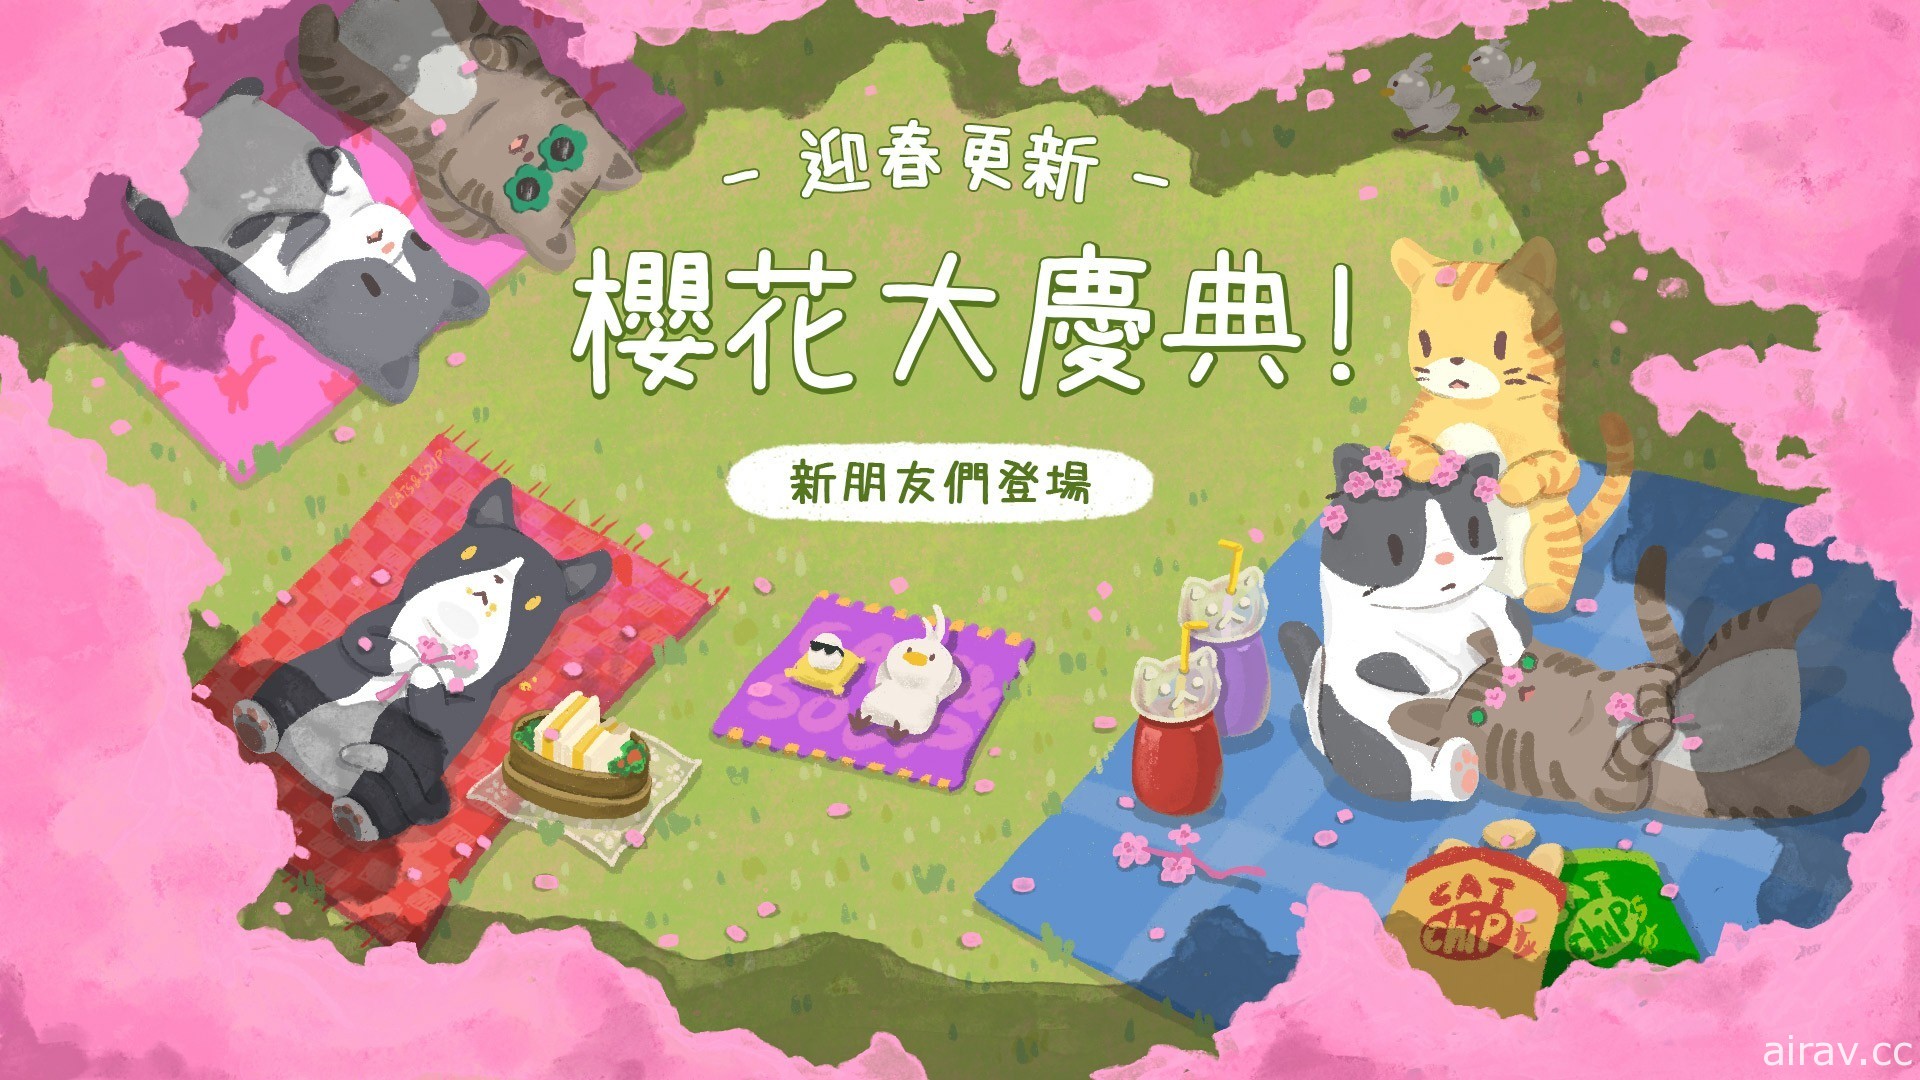 《貓咪和湯》迎春櫻花活動開跑 收集櫻花花瓣製作活動道具